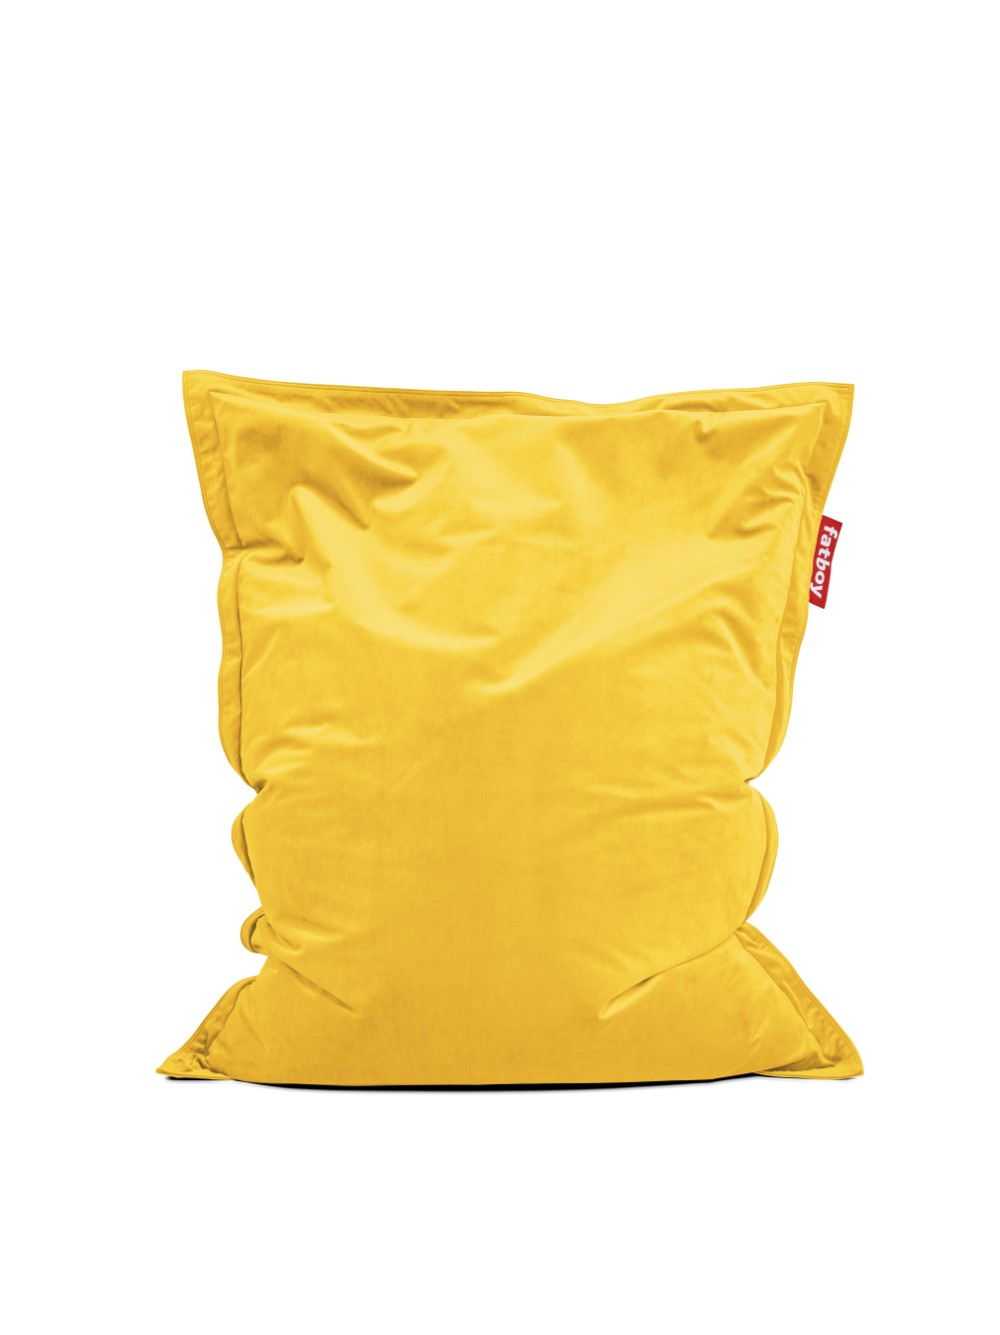 Fatboy Original Slim Velvet Bean Bag Maize Yellow